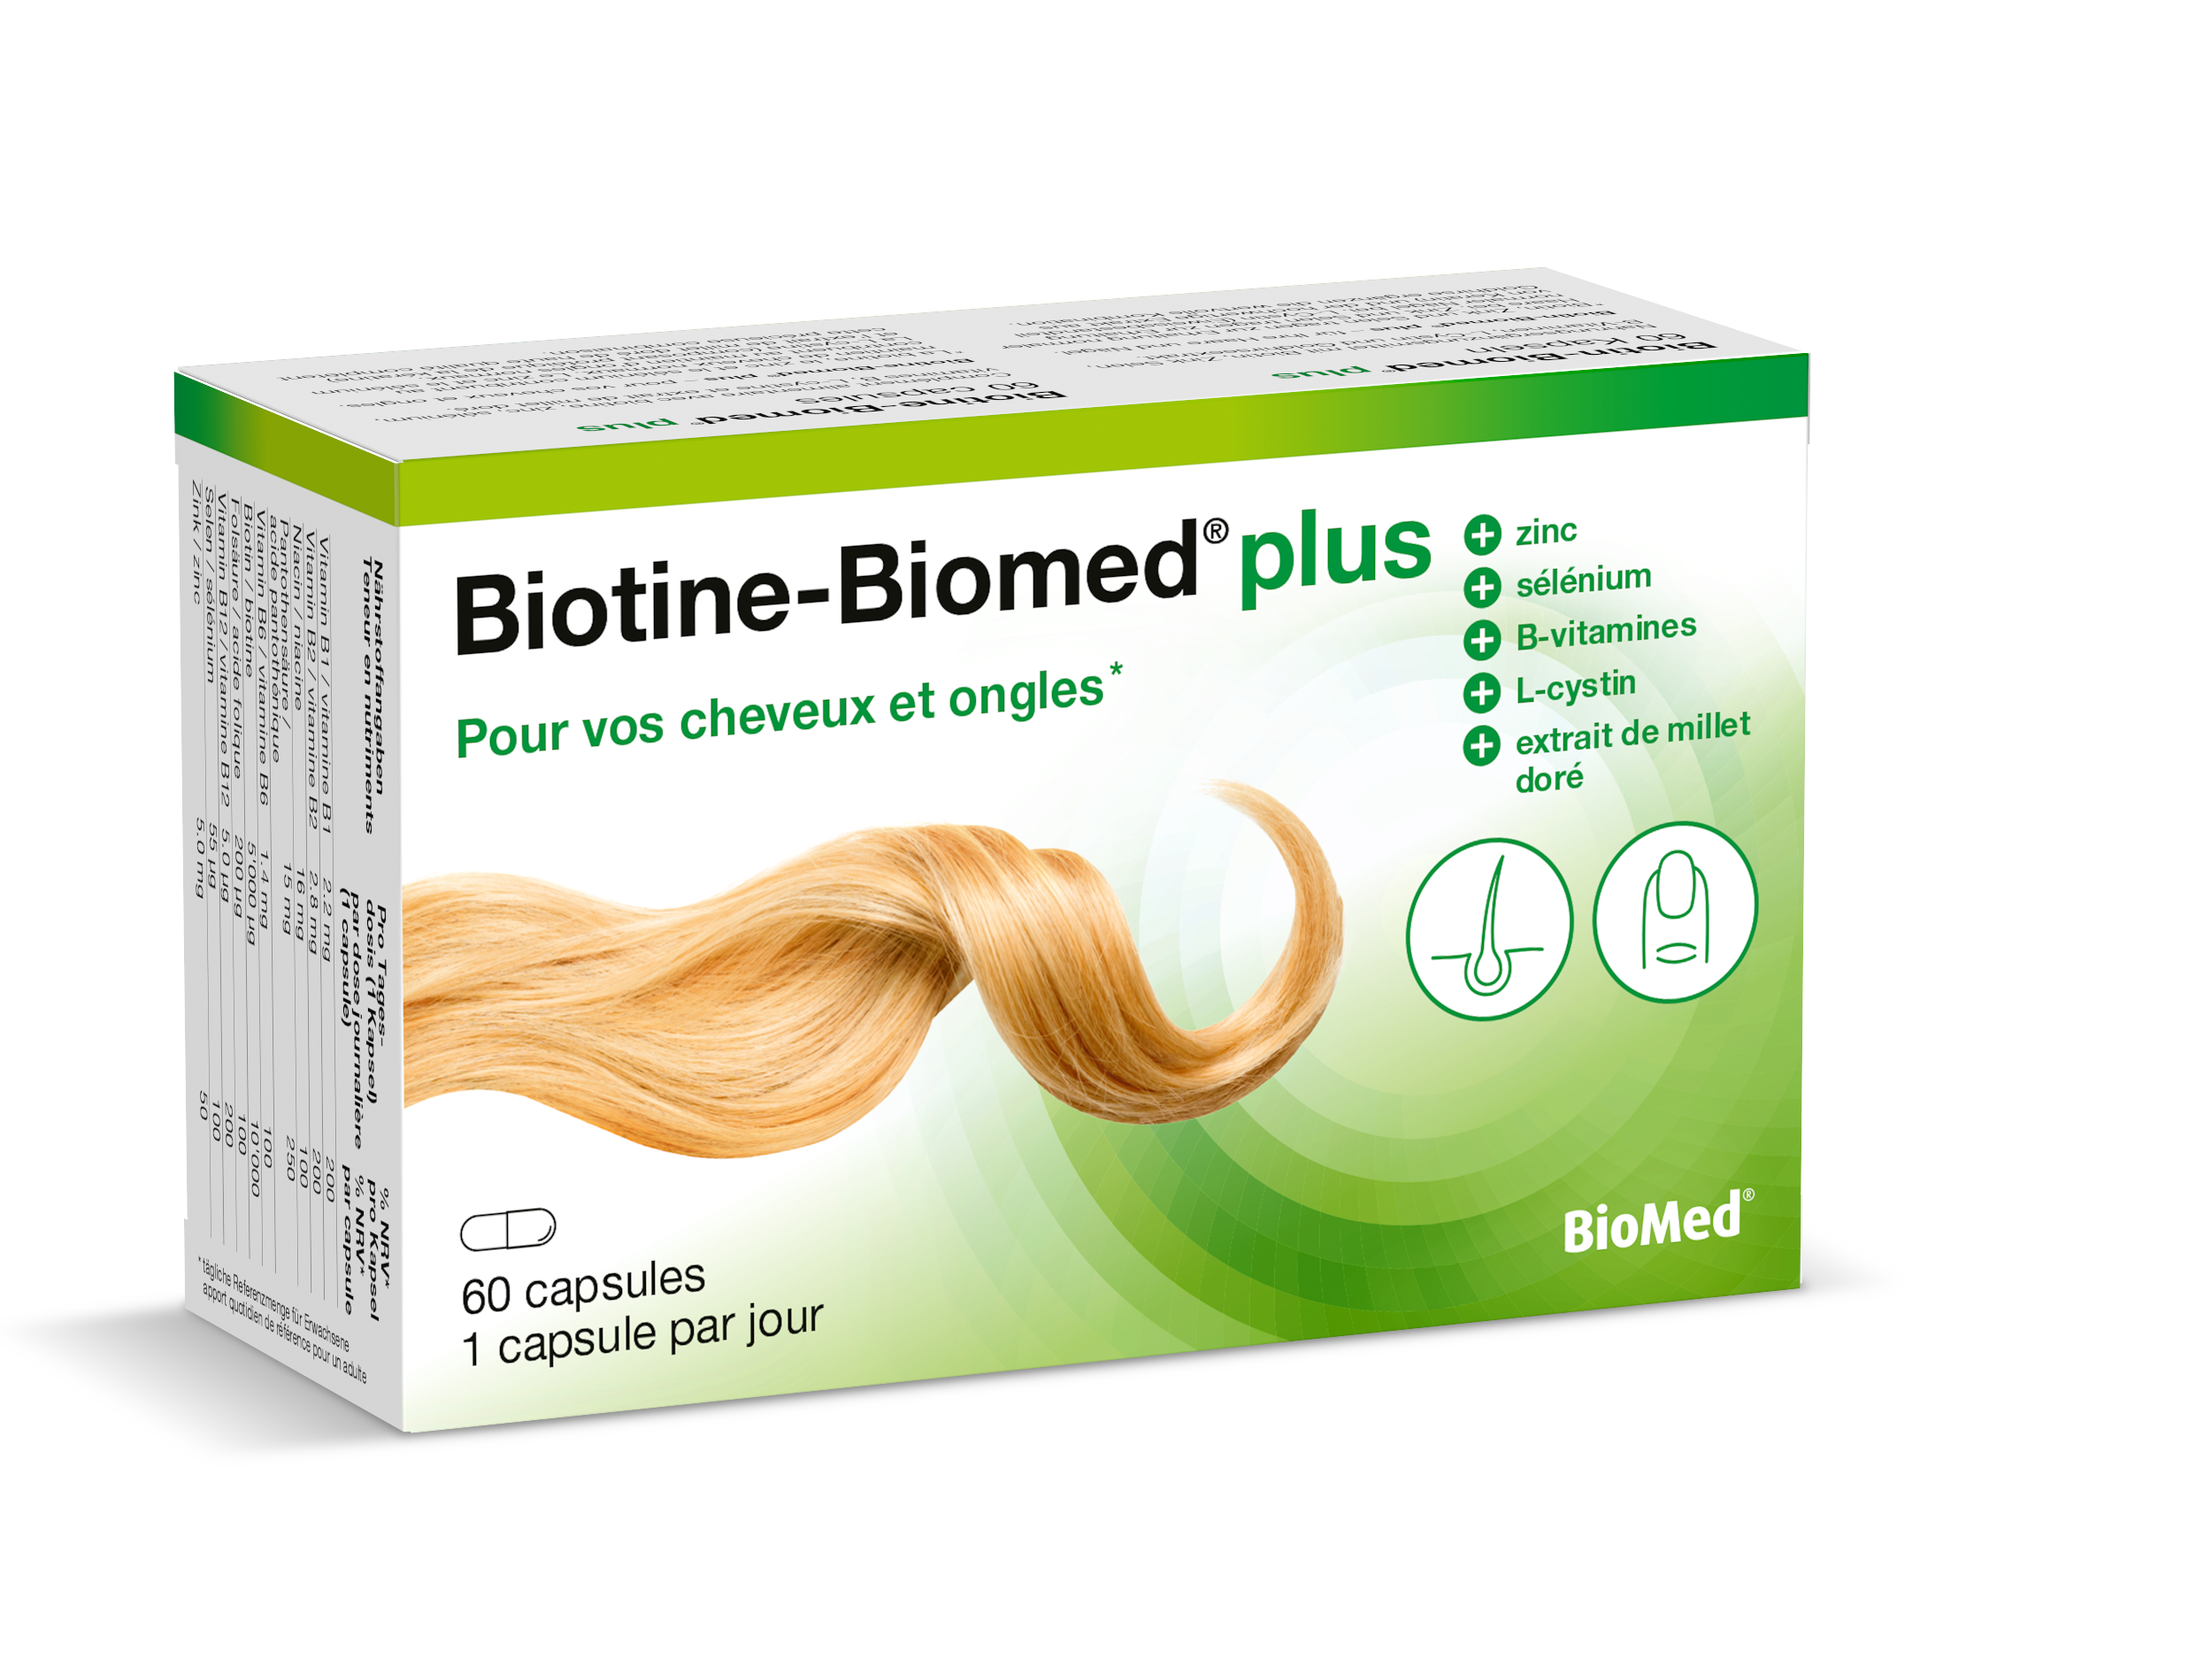 Biotine-Biomed plus